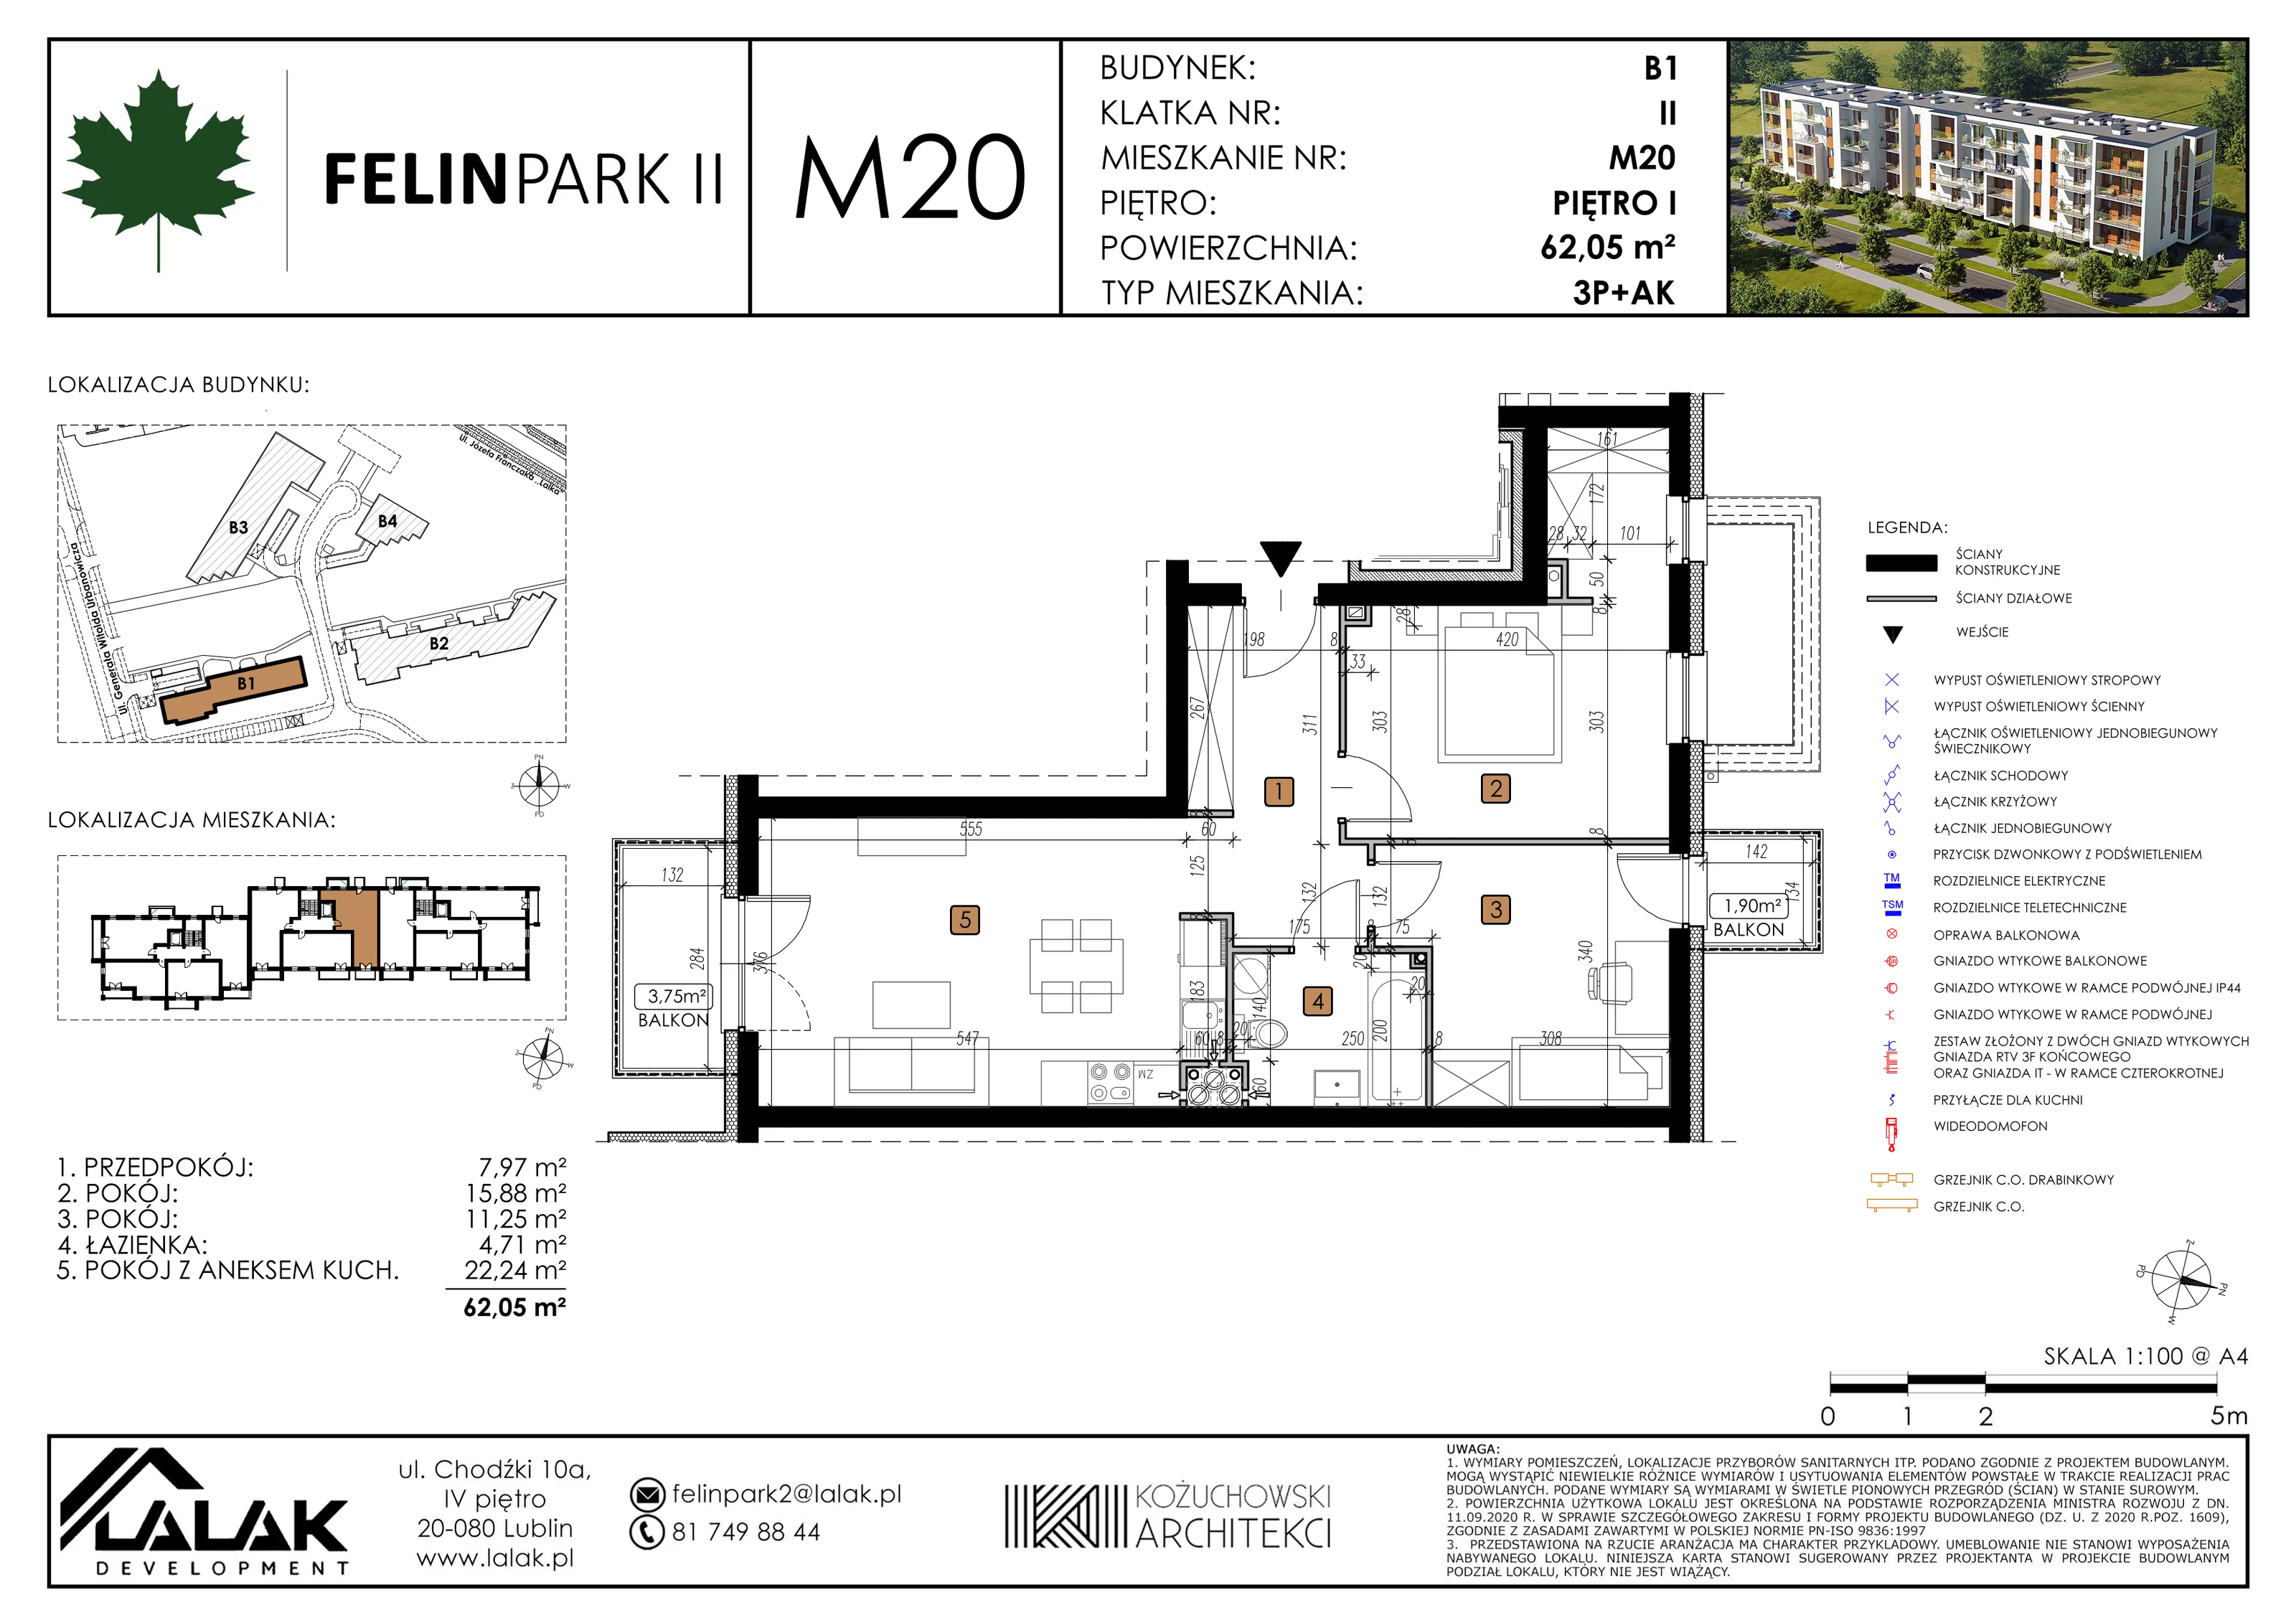 Mieszkanie 62,14 m², piętro 1, oferta nr B1_M20/I, Felin Park II, Lublin, Felin, ul. gen. Stanisława Skalskiego 8-10